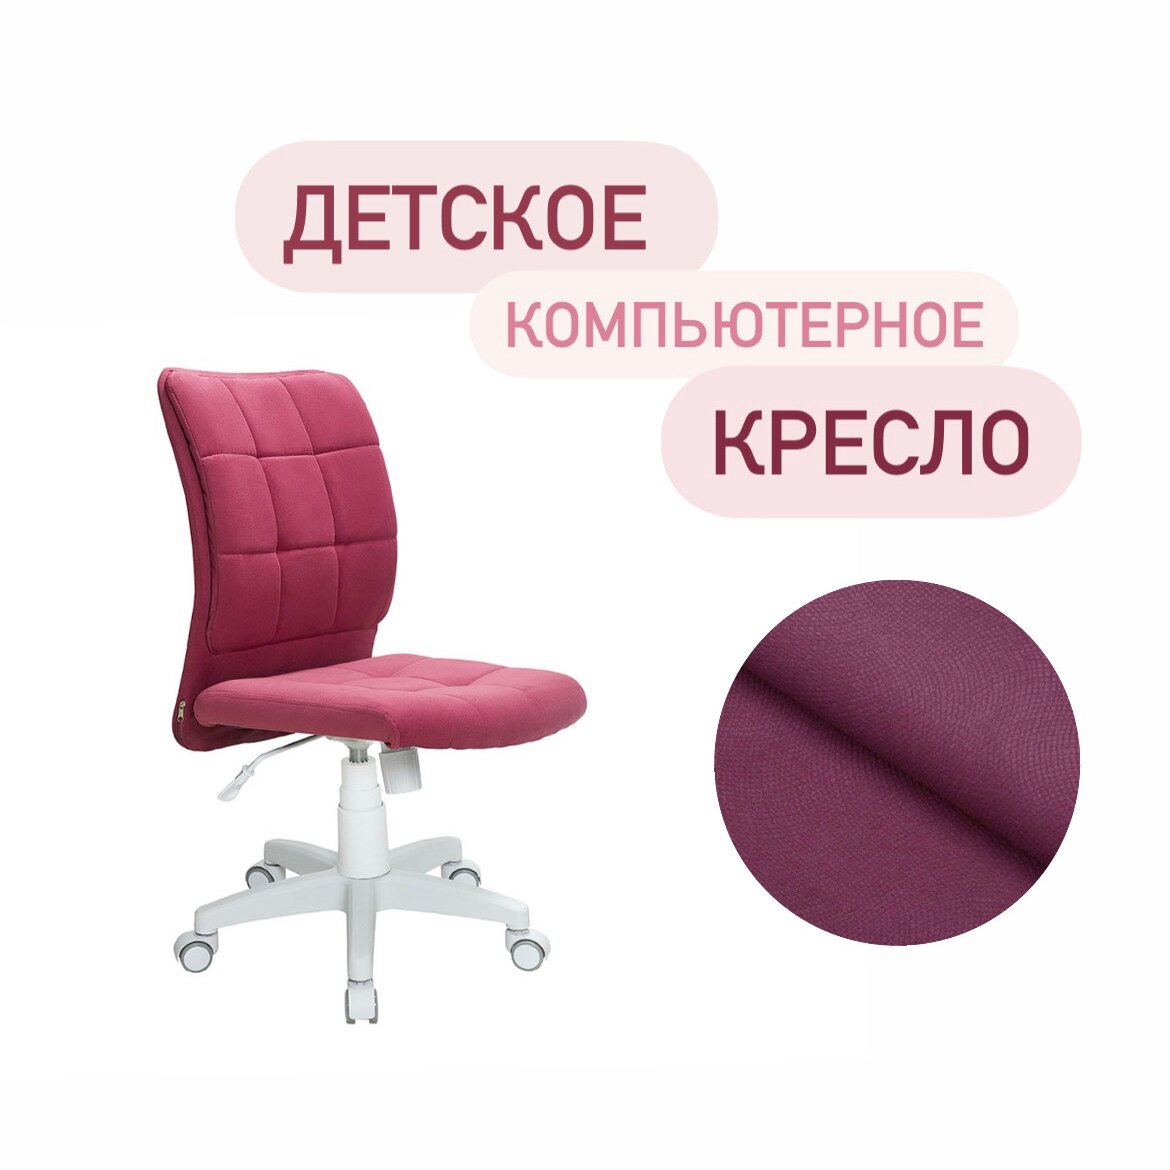 Компьютерное кресло офисный белый стул для школьника на колесиках розовый